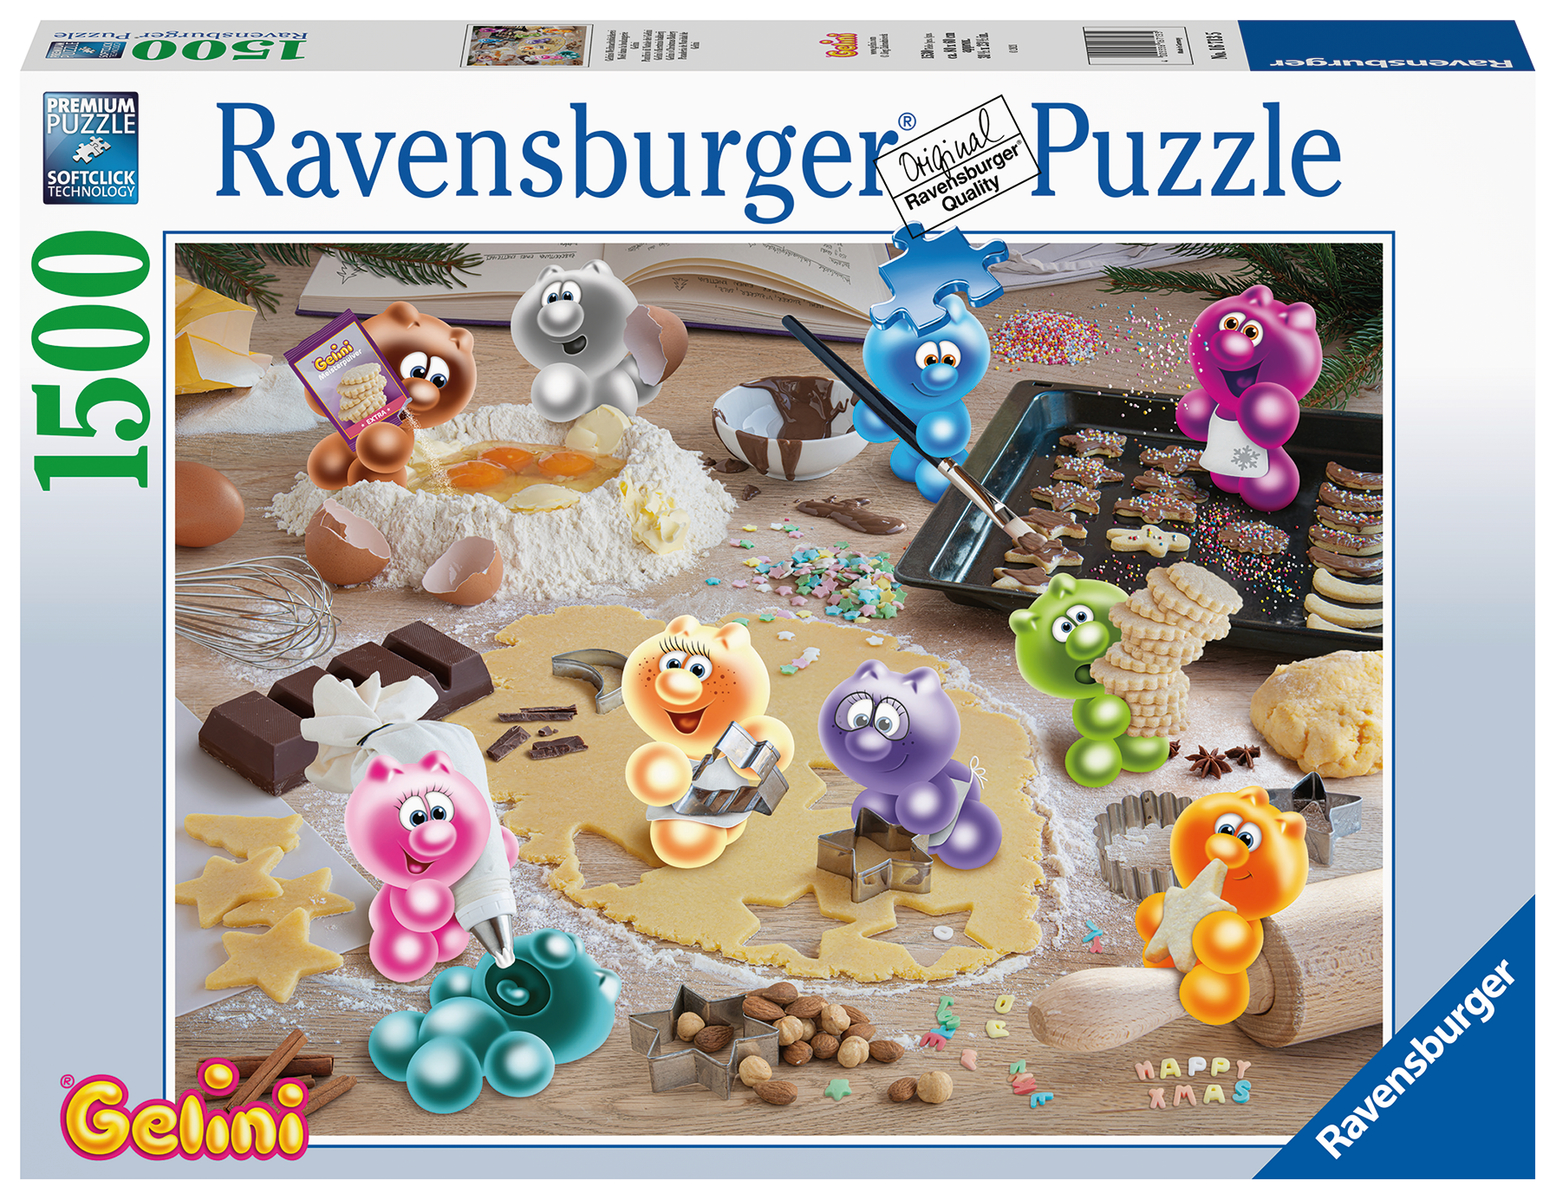 Ravensburger weihnachtspuzzle - Die besten Ravensburger weihnachtspuzzle im Vergleich